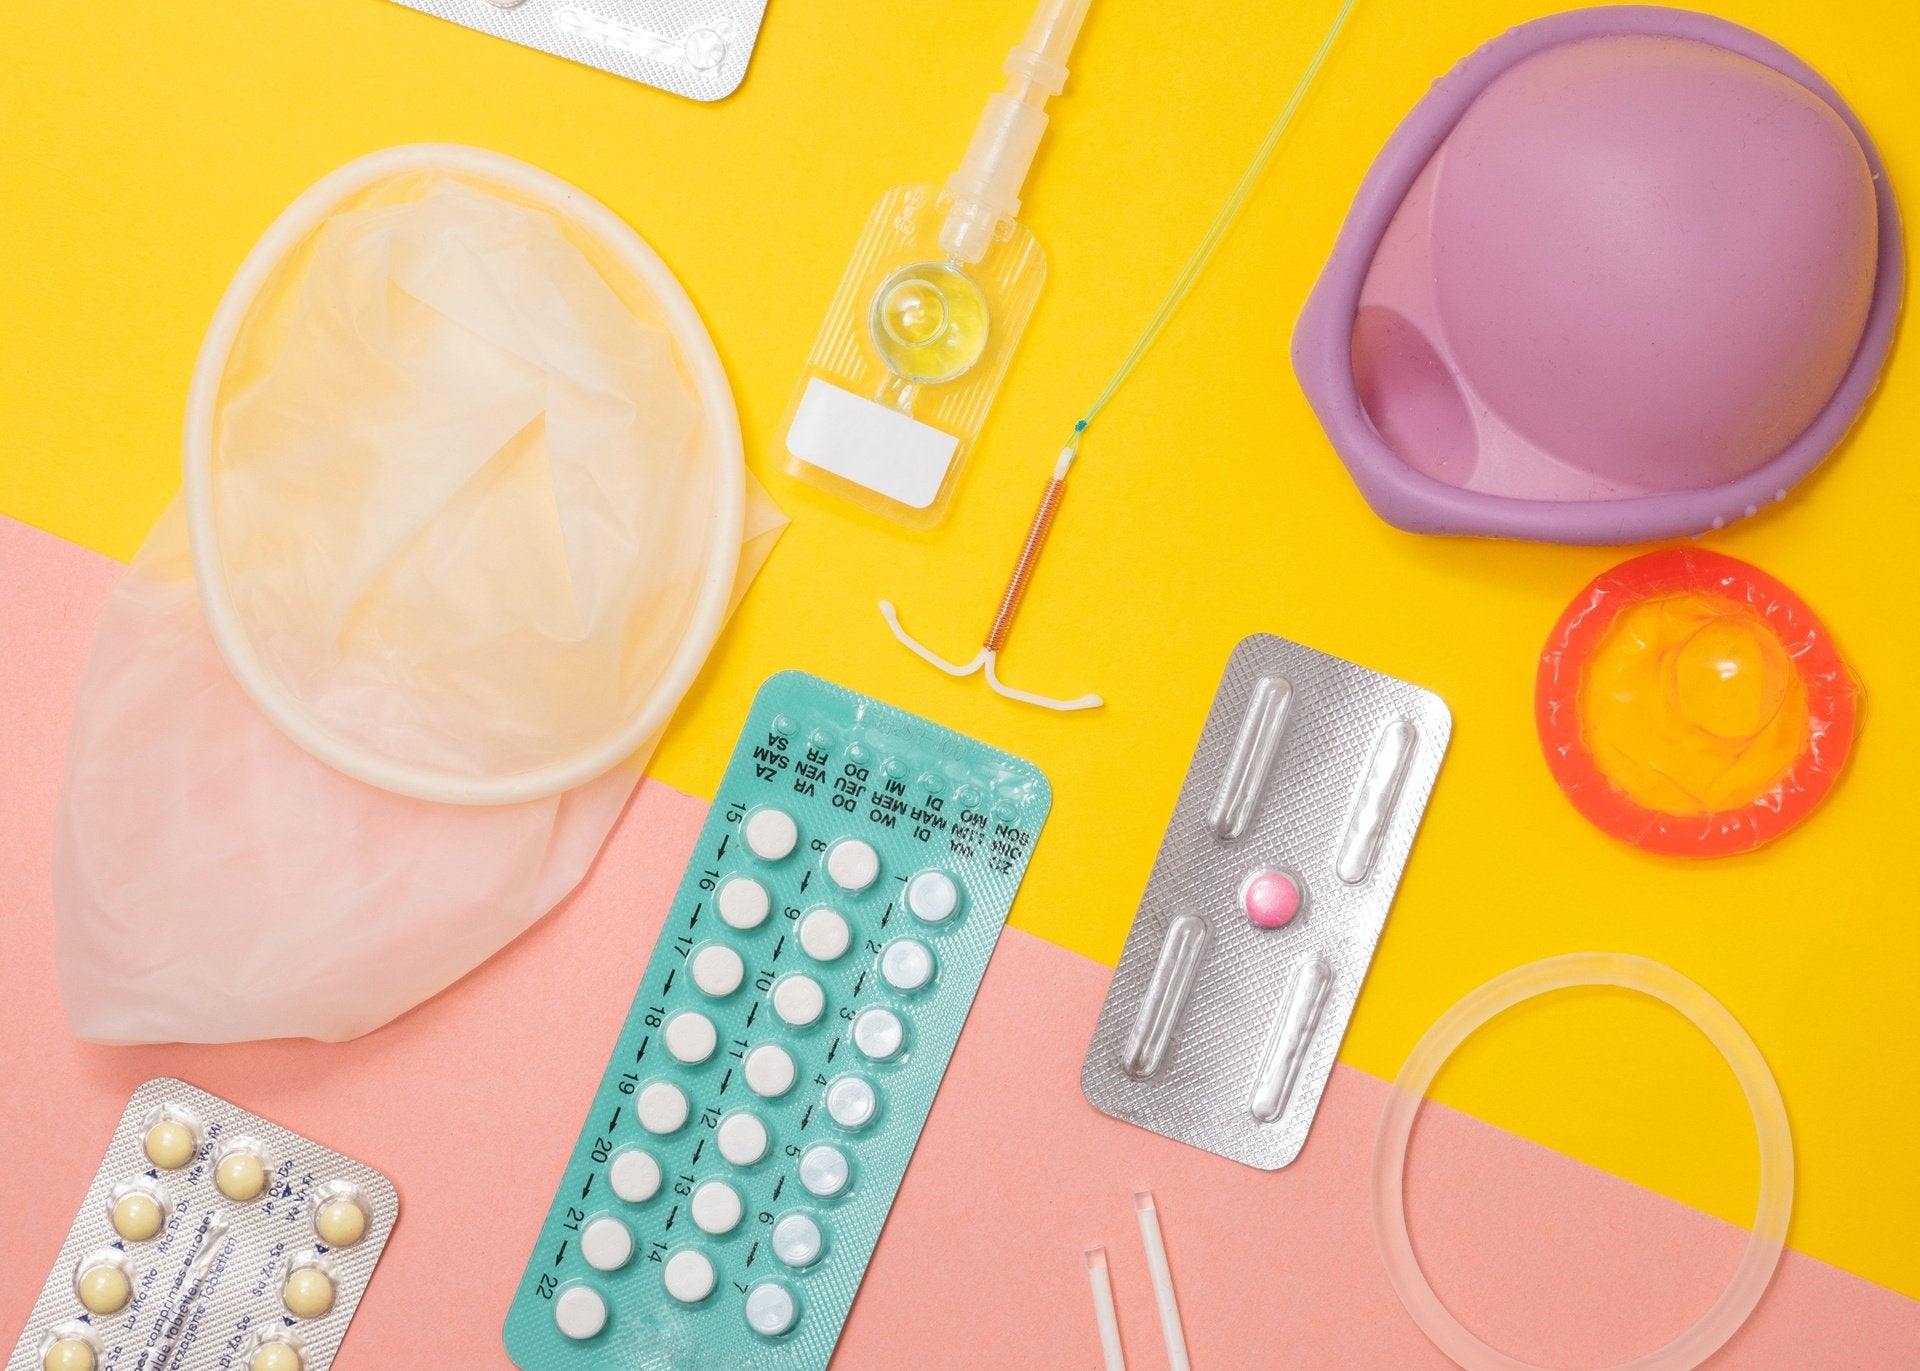 Stérilet ou Implant | La meilleure solution contraceptive